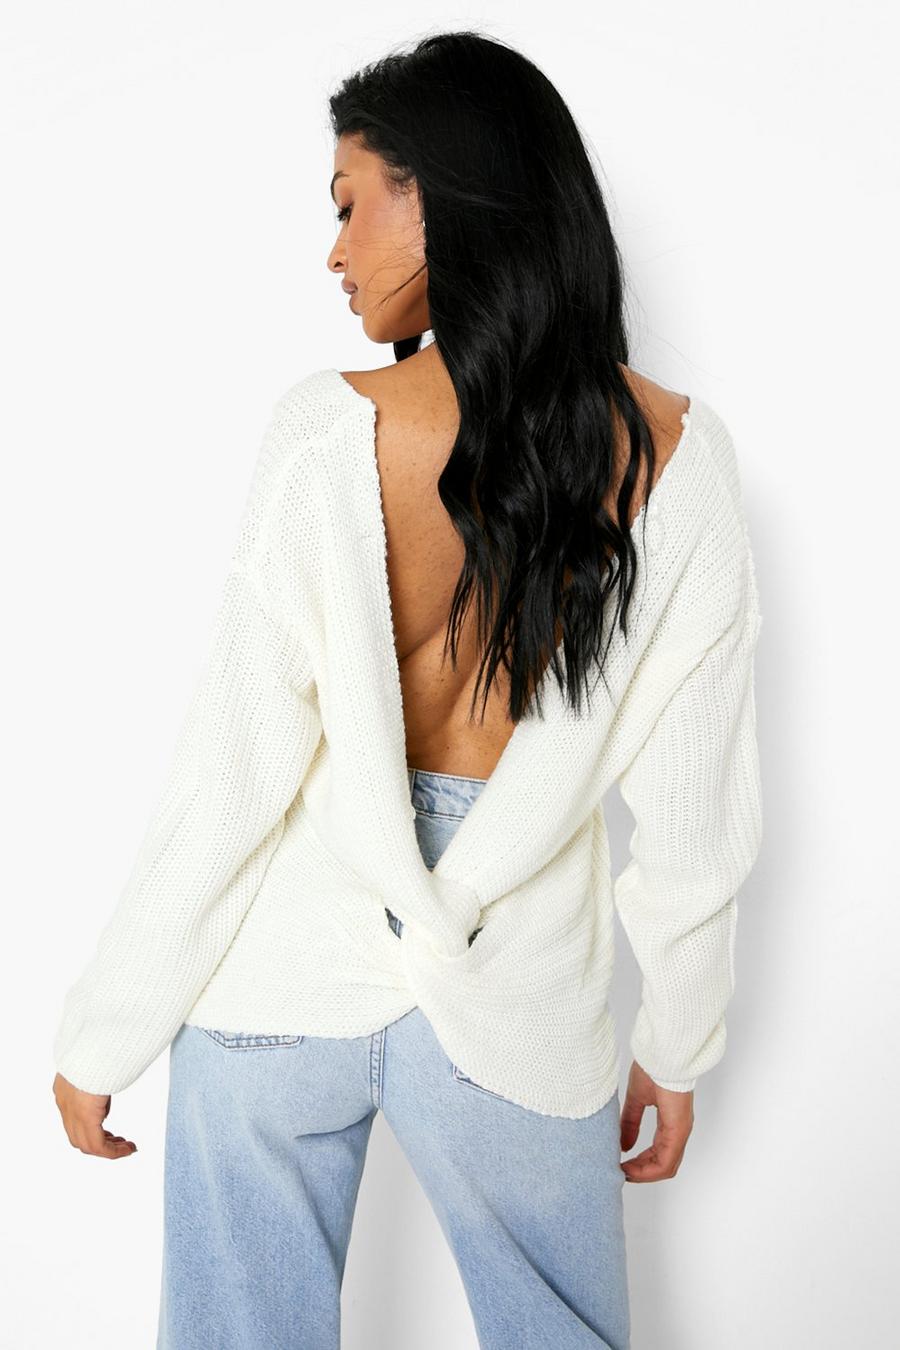 קרם bianco סוודר מבד ממוחזר עם פיתול בגב, לנשים גבוהות